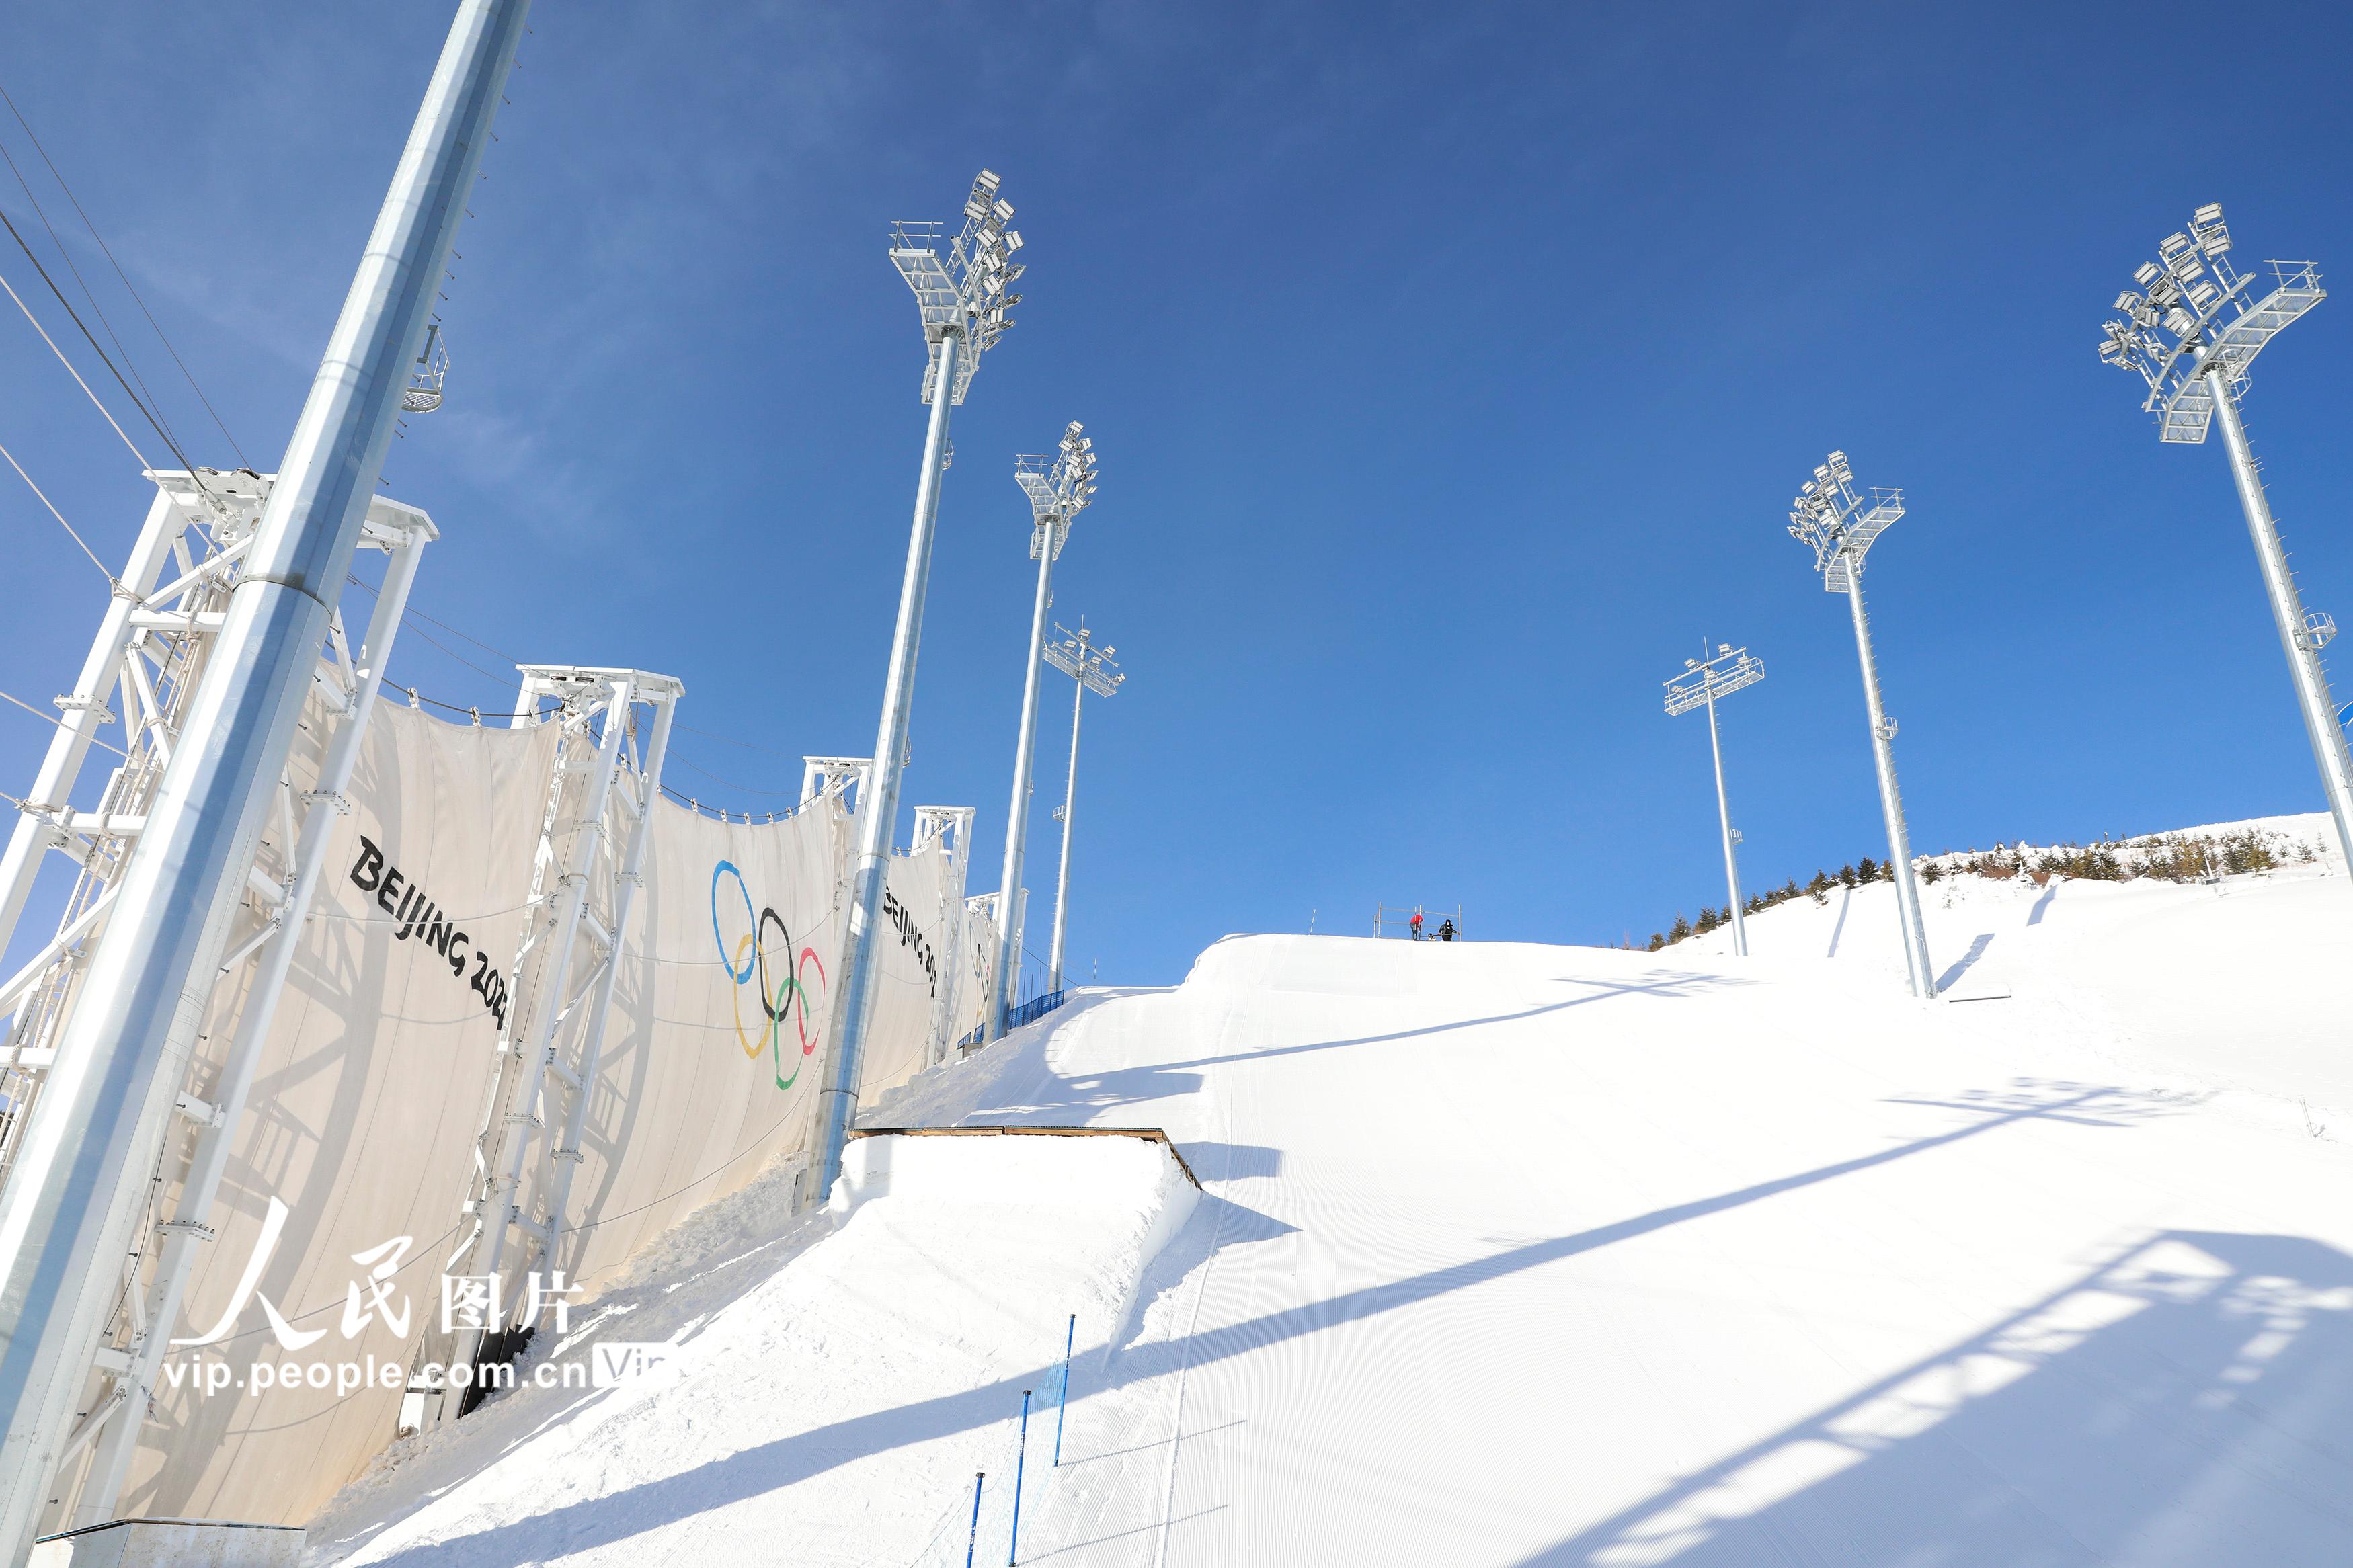 2022年1月19日拍攝的張家口賽區雲頂滑雪公園空中技巧賽場防風牆。